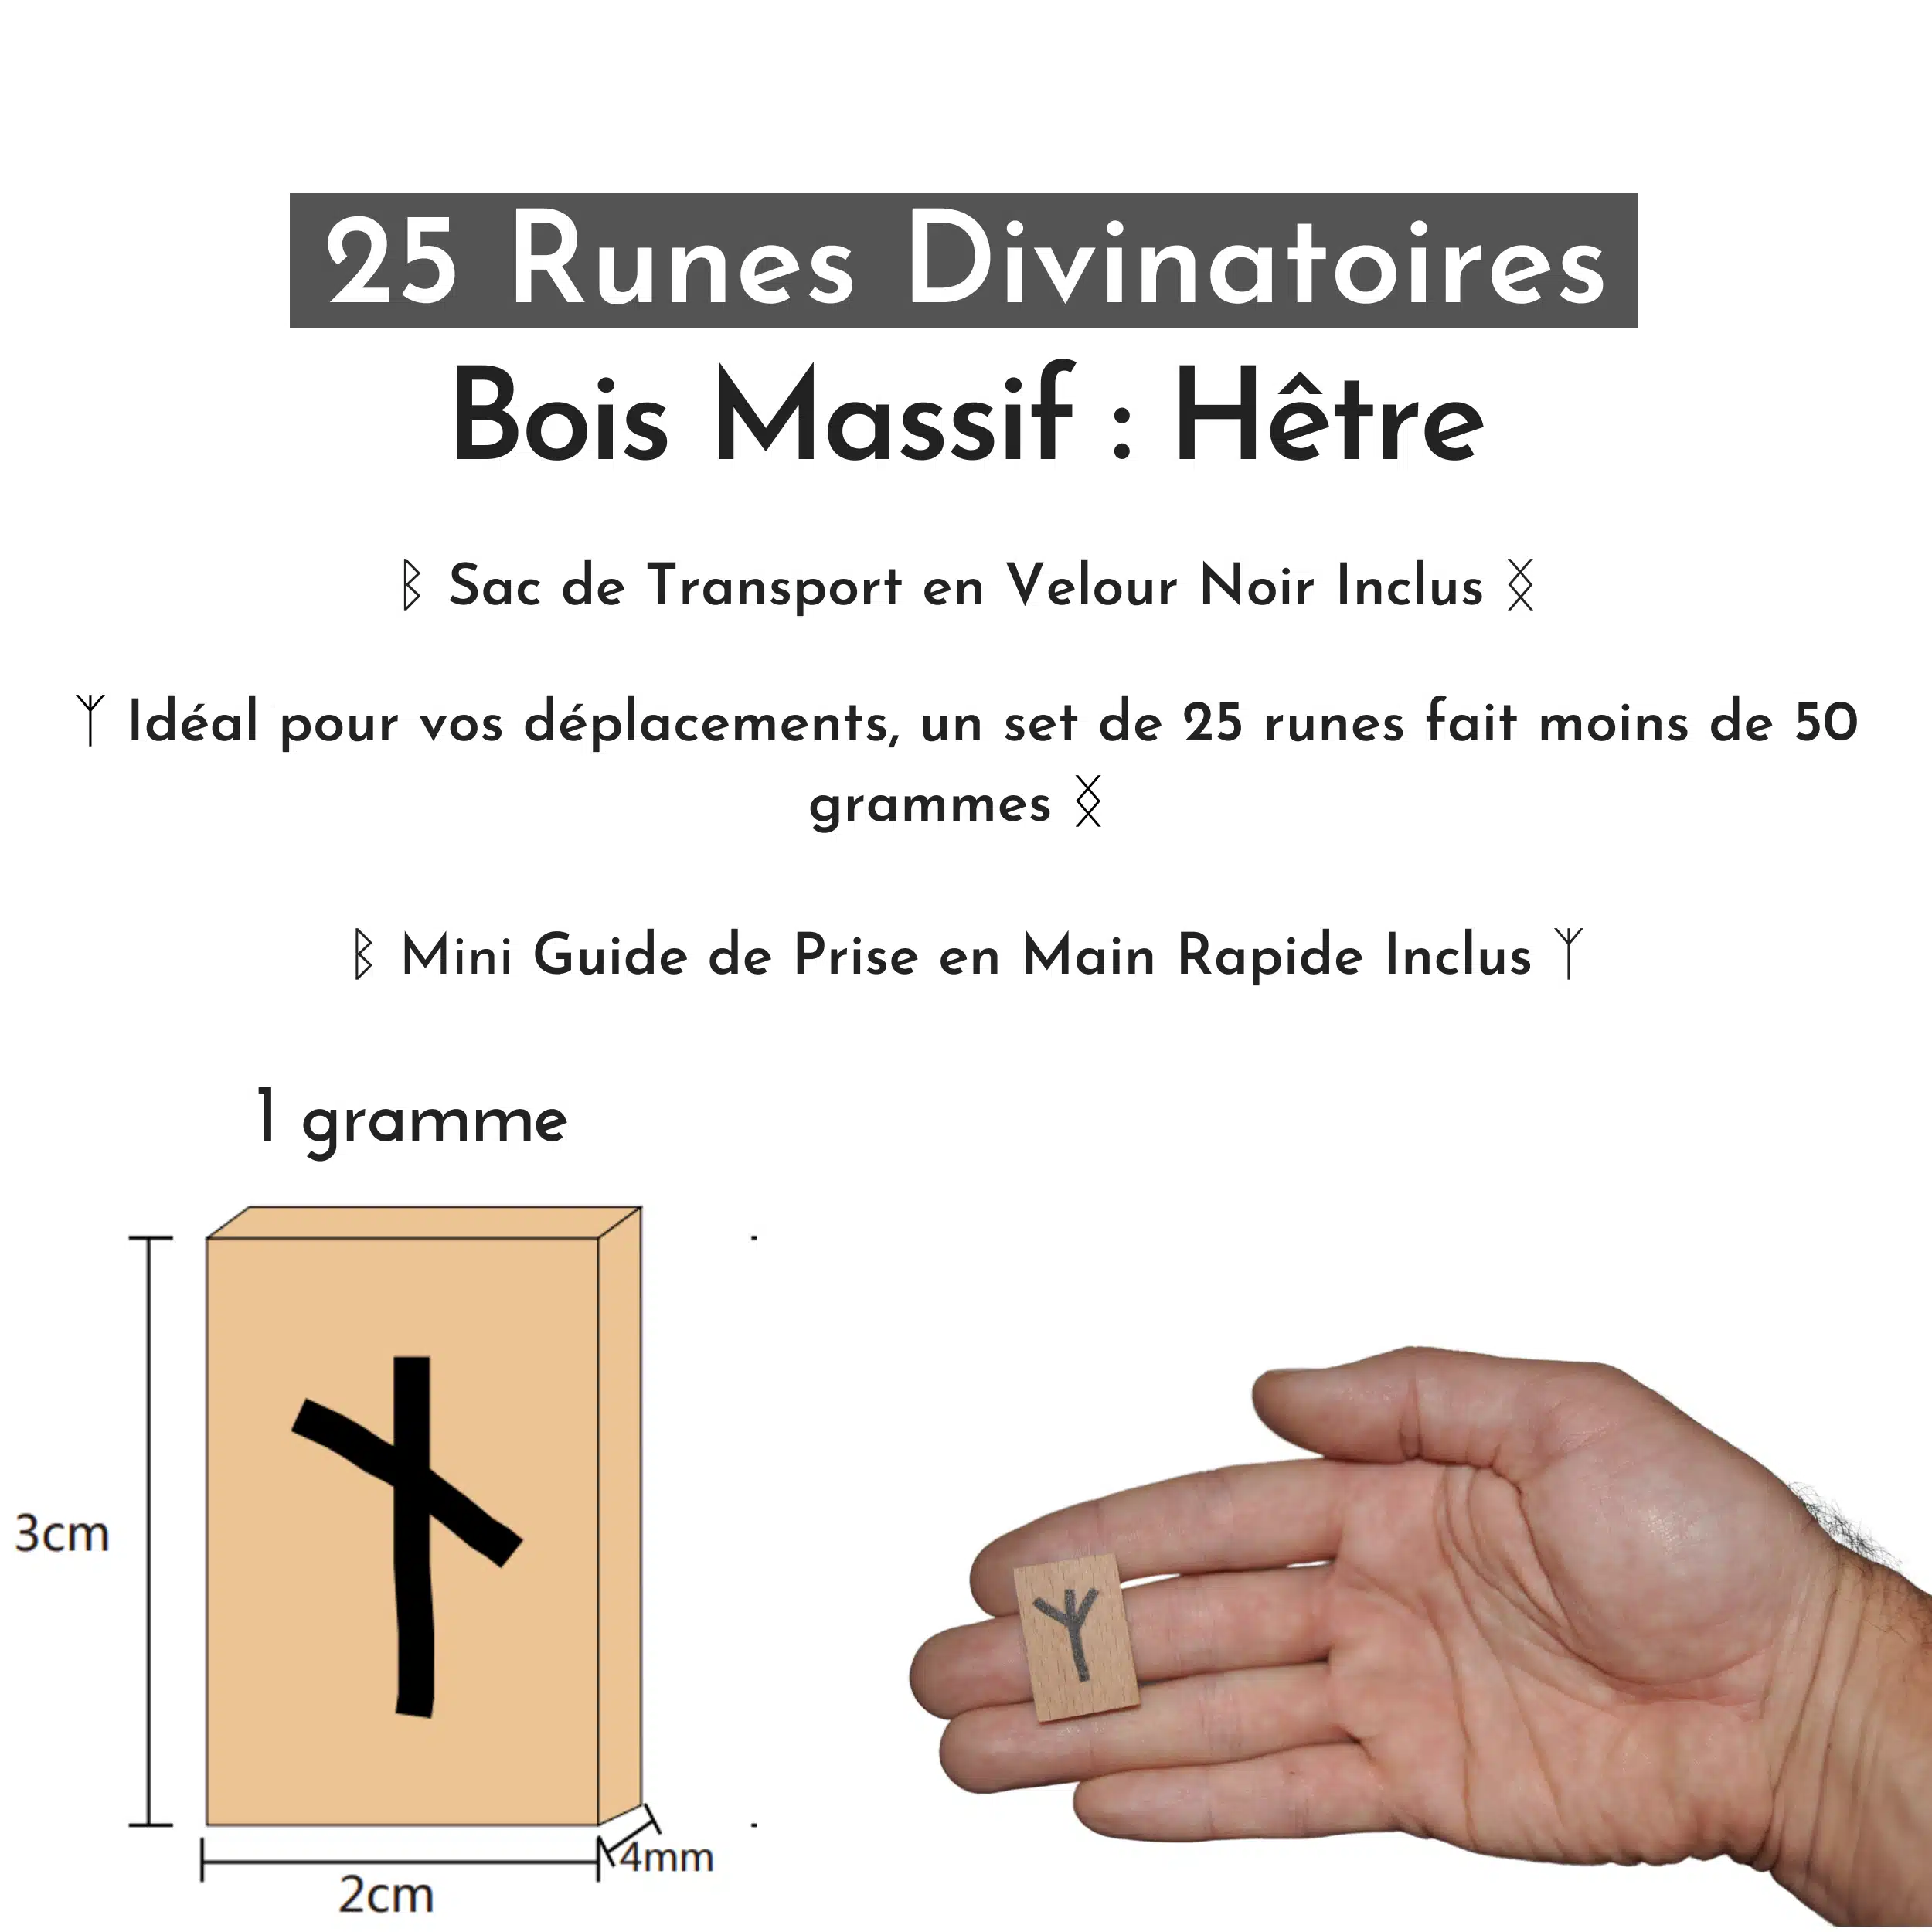 Mon Guide des Runes Divinatoires